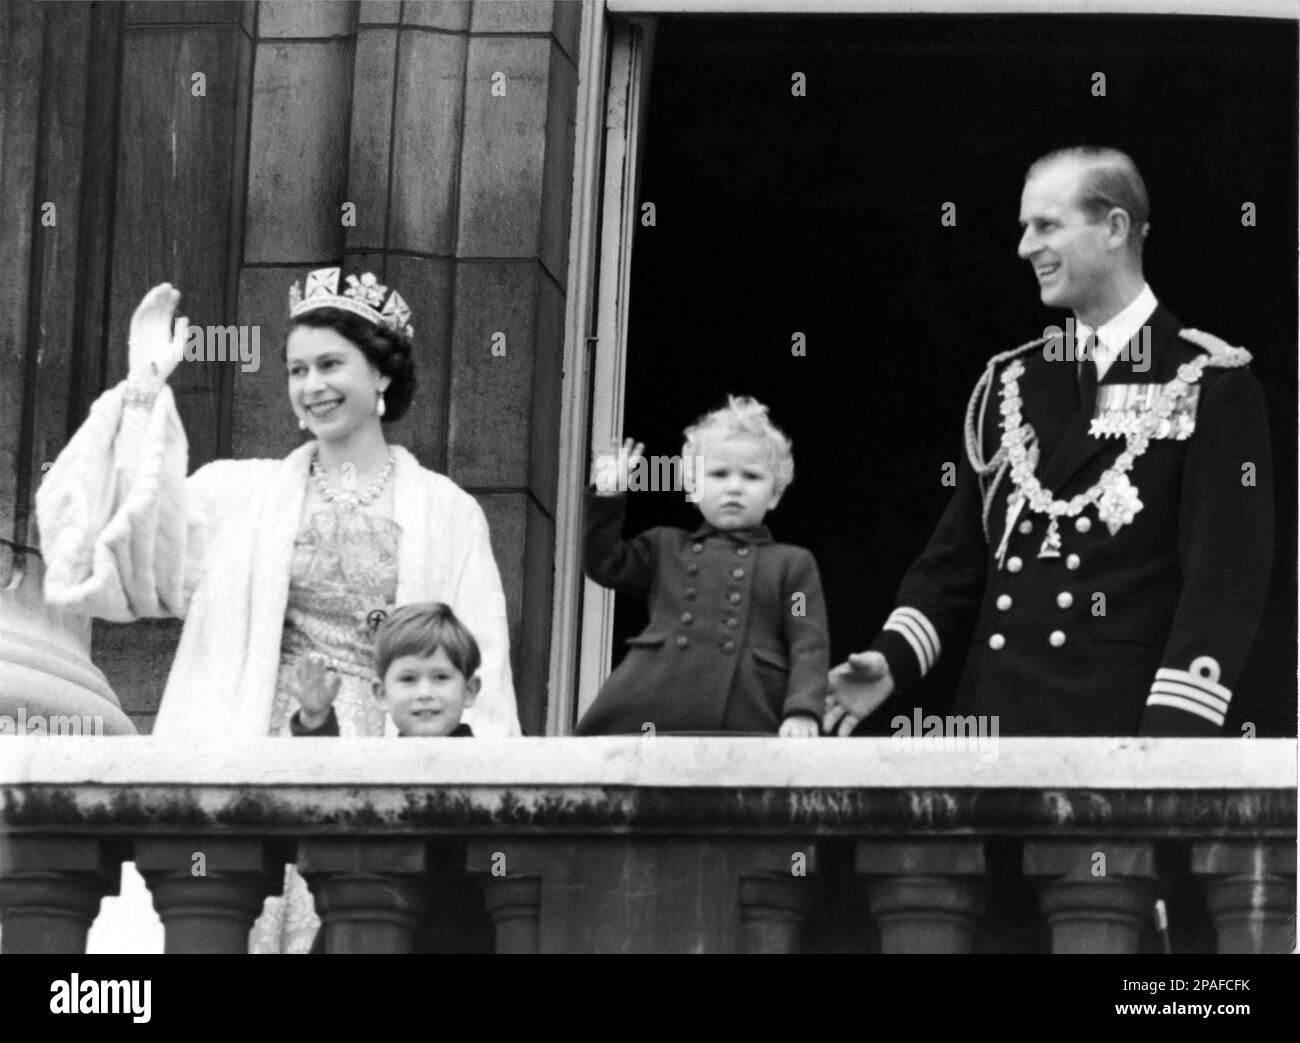 1952, 4 novembre , Buckingham Palace , Londres , Angleterre : la c Reine ELIZABETH II d'Angleterre ( née en 1926 ) le jour de l'ouverture du Parlement , après la cérémonie la famille royale au balcon . Dans cette photo avec le prince haussand PHILIP Mountbatten Duc d'ÉDIMBOURG ( né en 1921 ), les fils prince CHARLES de Galles (né en 1948 ) et la princesse Royale ANNE ( née en 1950 ) - REALI - ROYALTIES - nobili - Nobiltà - noblesse - GRAND BRETAGNA - GRANDE-BRETAGNE - INGHILTERRA - REGINA - WINDSOR - Maison de Saxe-Coburg-Gotha - célébrités personnalités personnalités personnalités quand était jeune enfant Banque D'Images